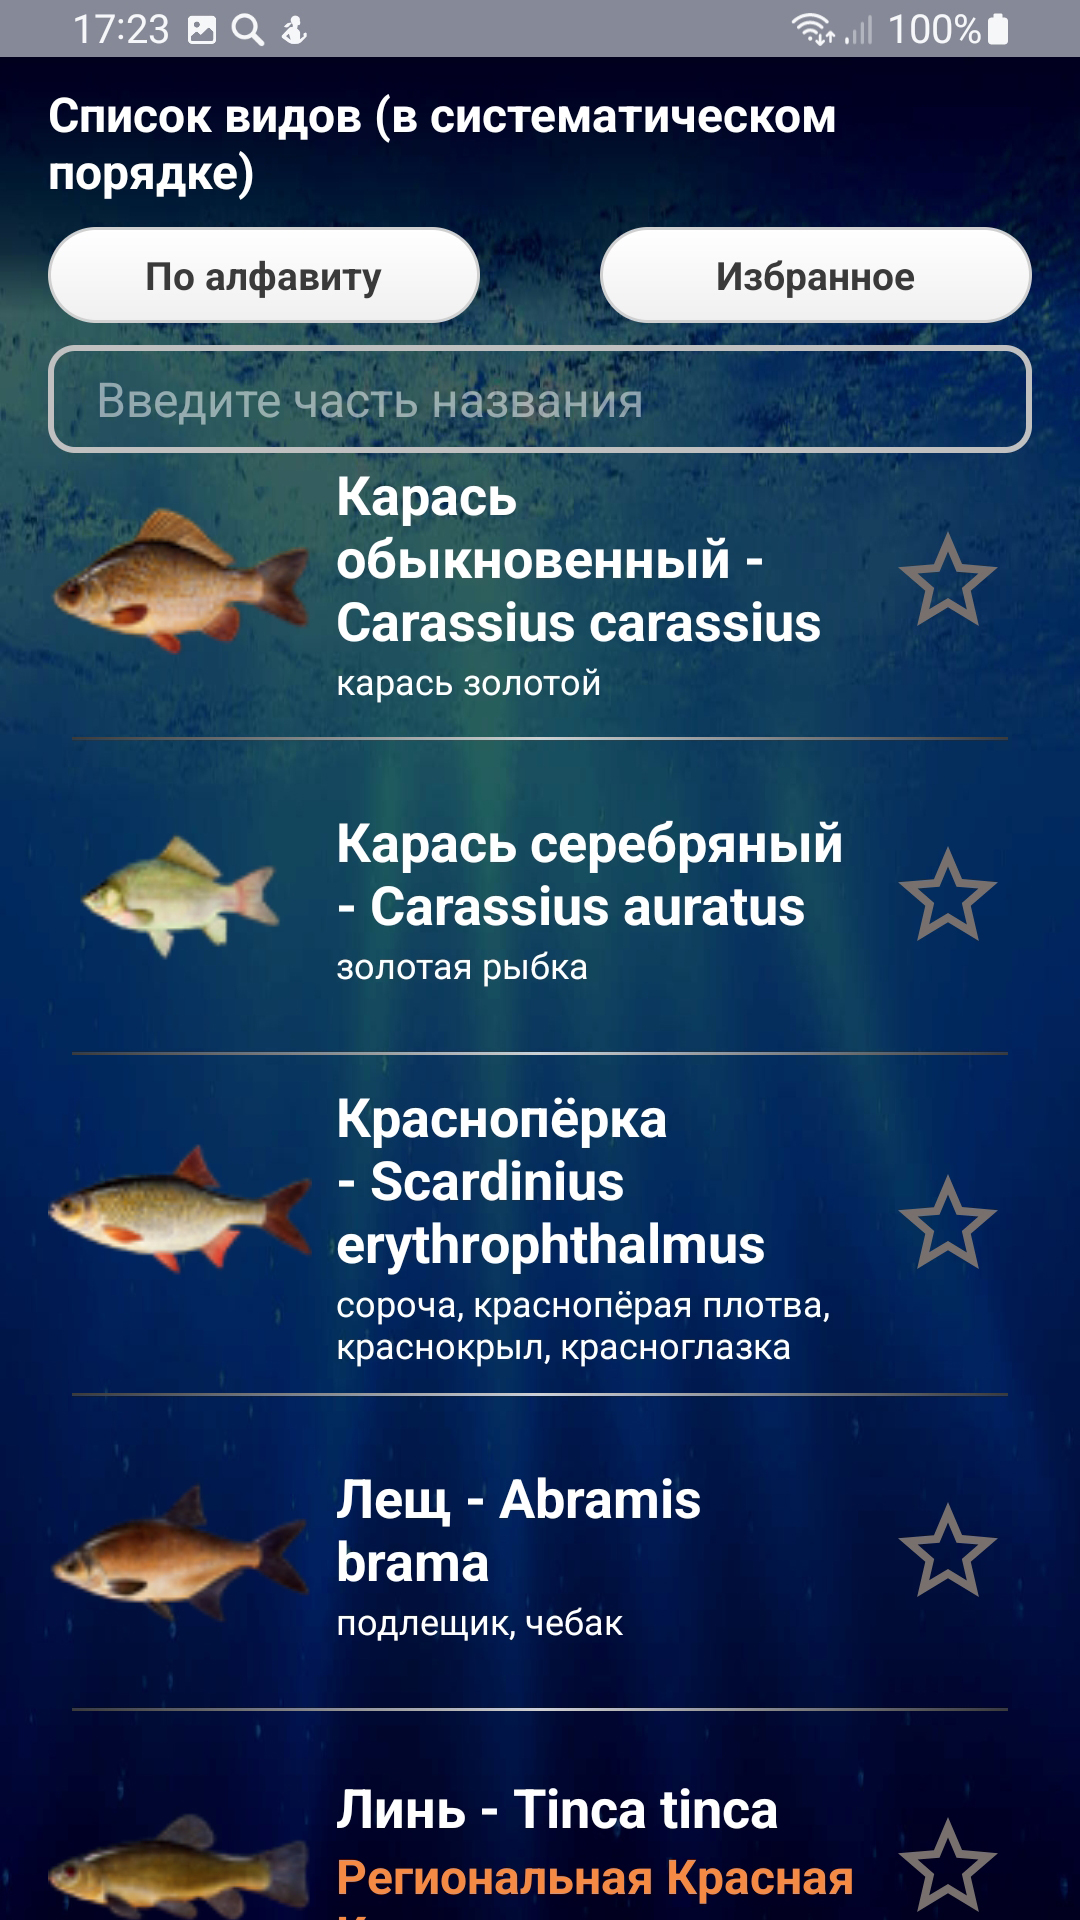 Рыба с лапами речная: особенности, распространение, виды - информация об интересном существе